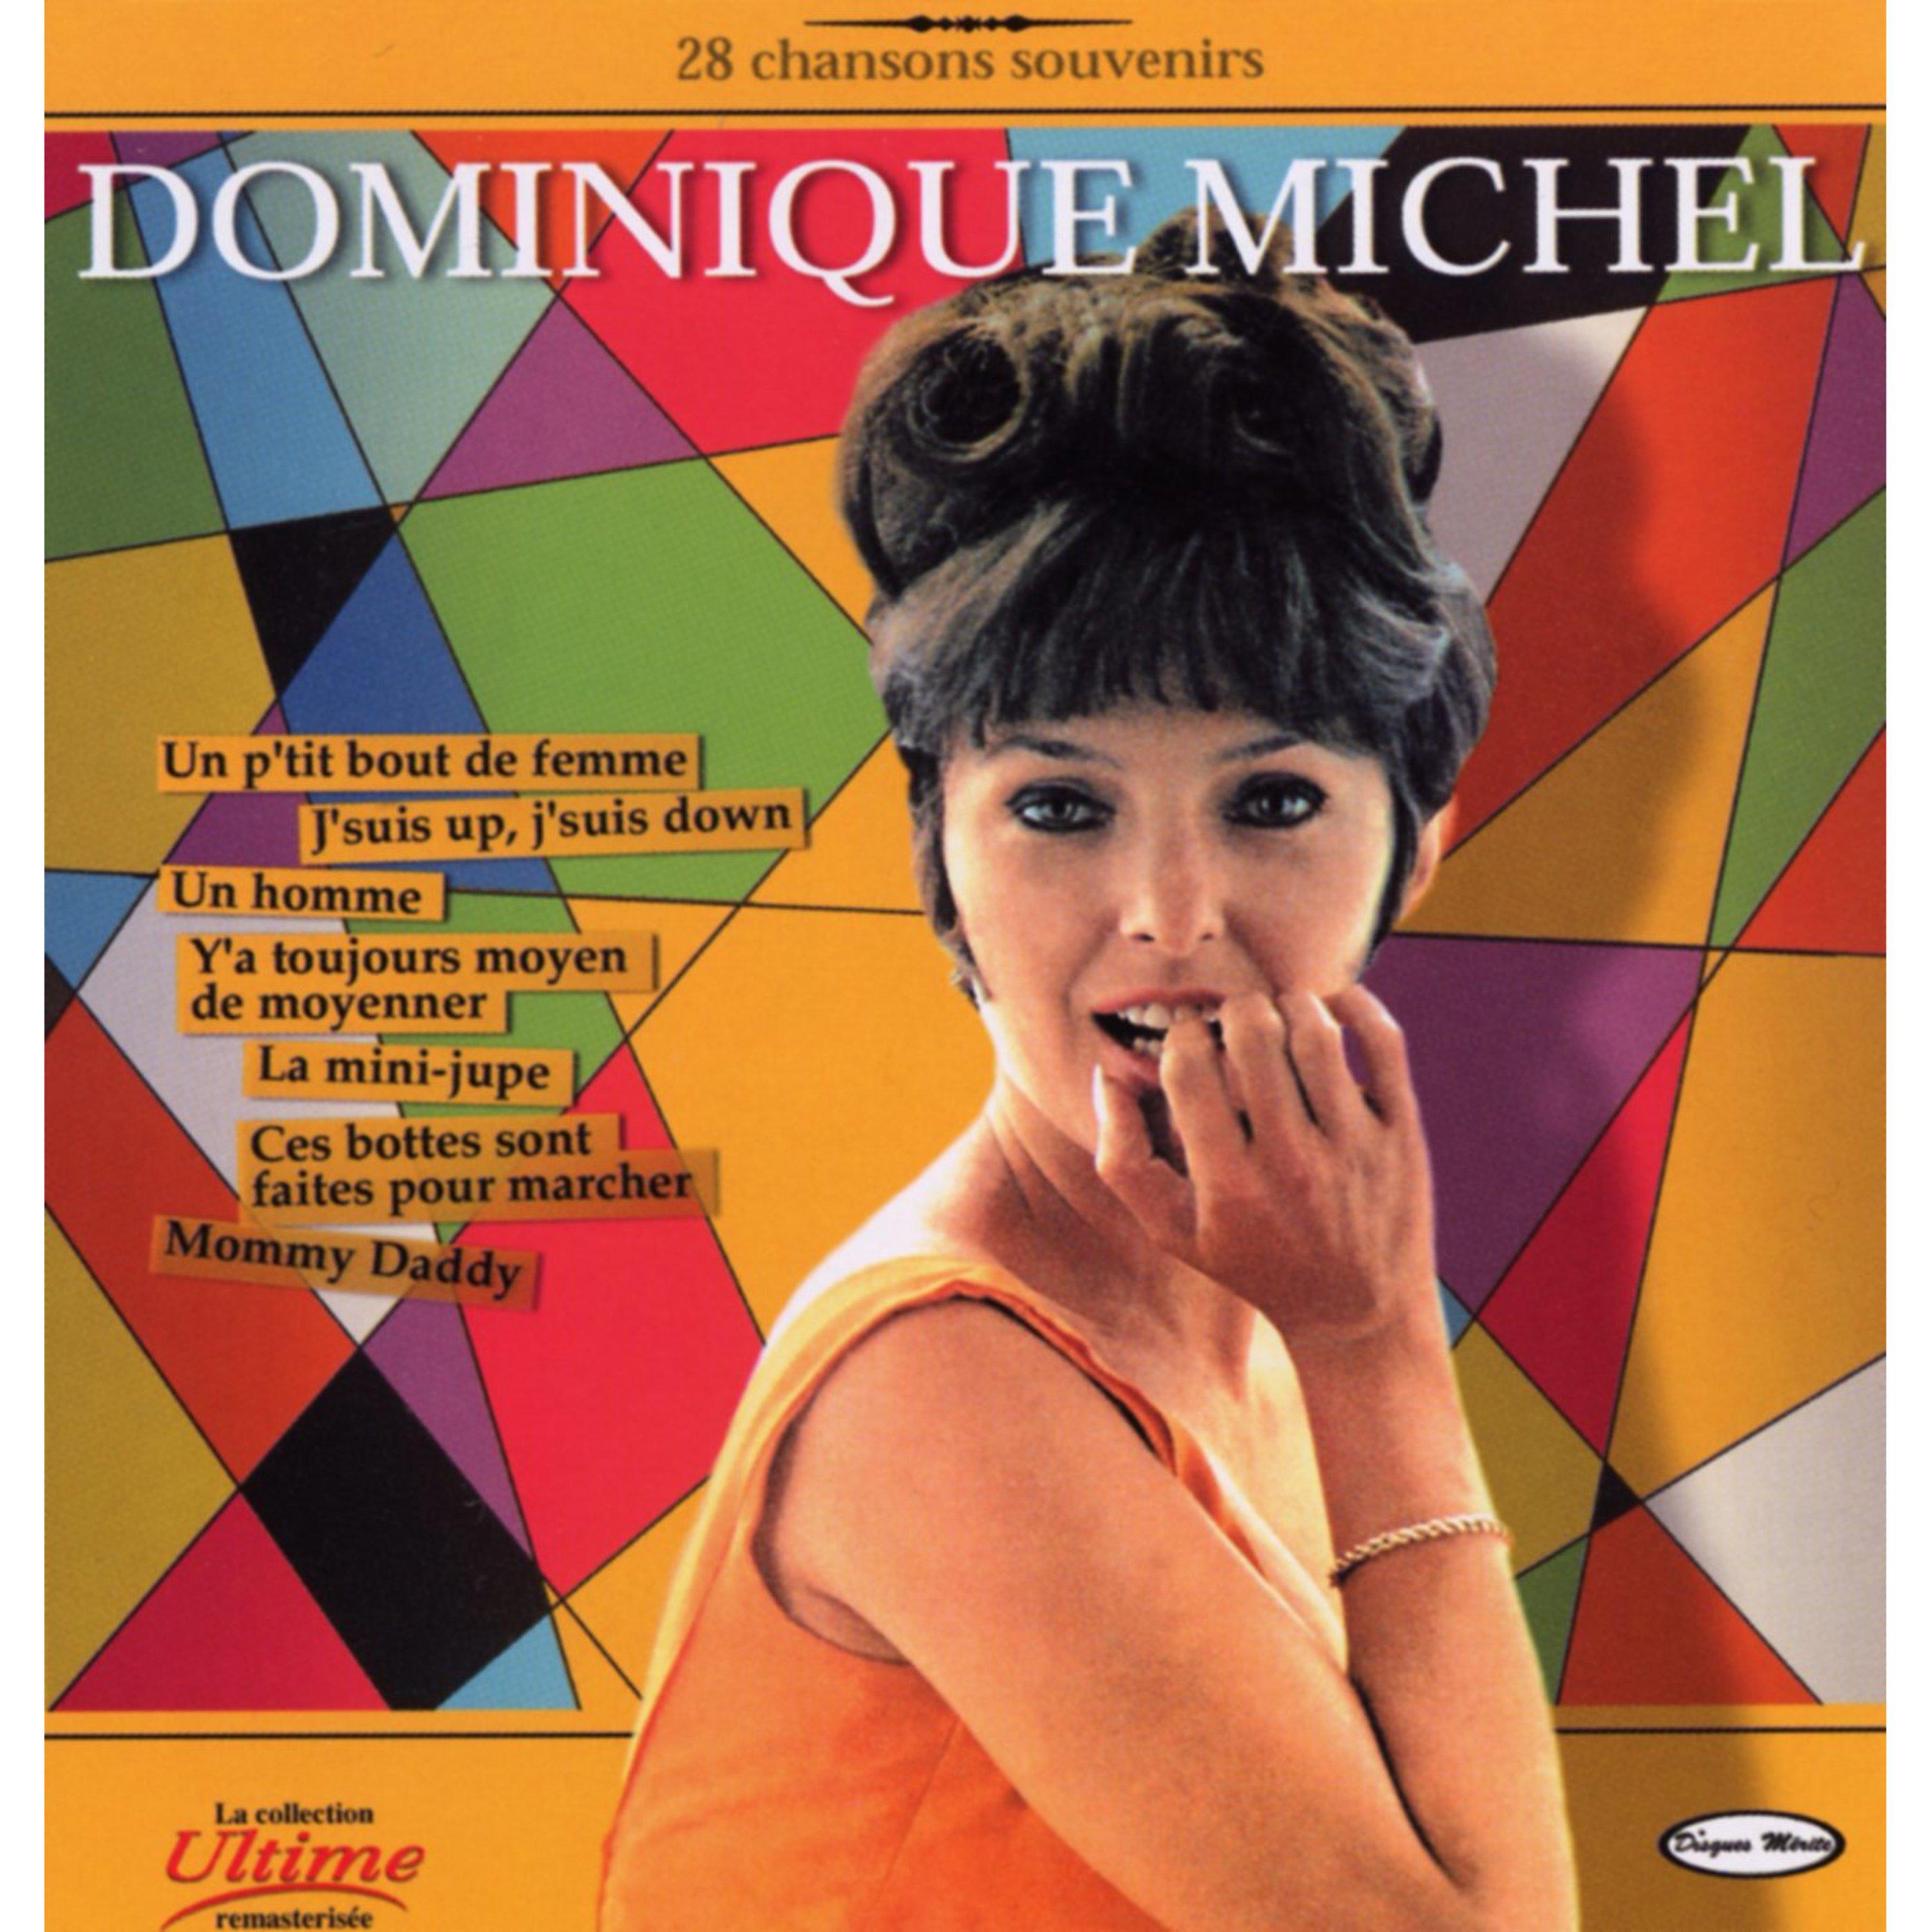 Dominique Michel - Partons tous les deux (with Denise Filiatrault)